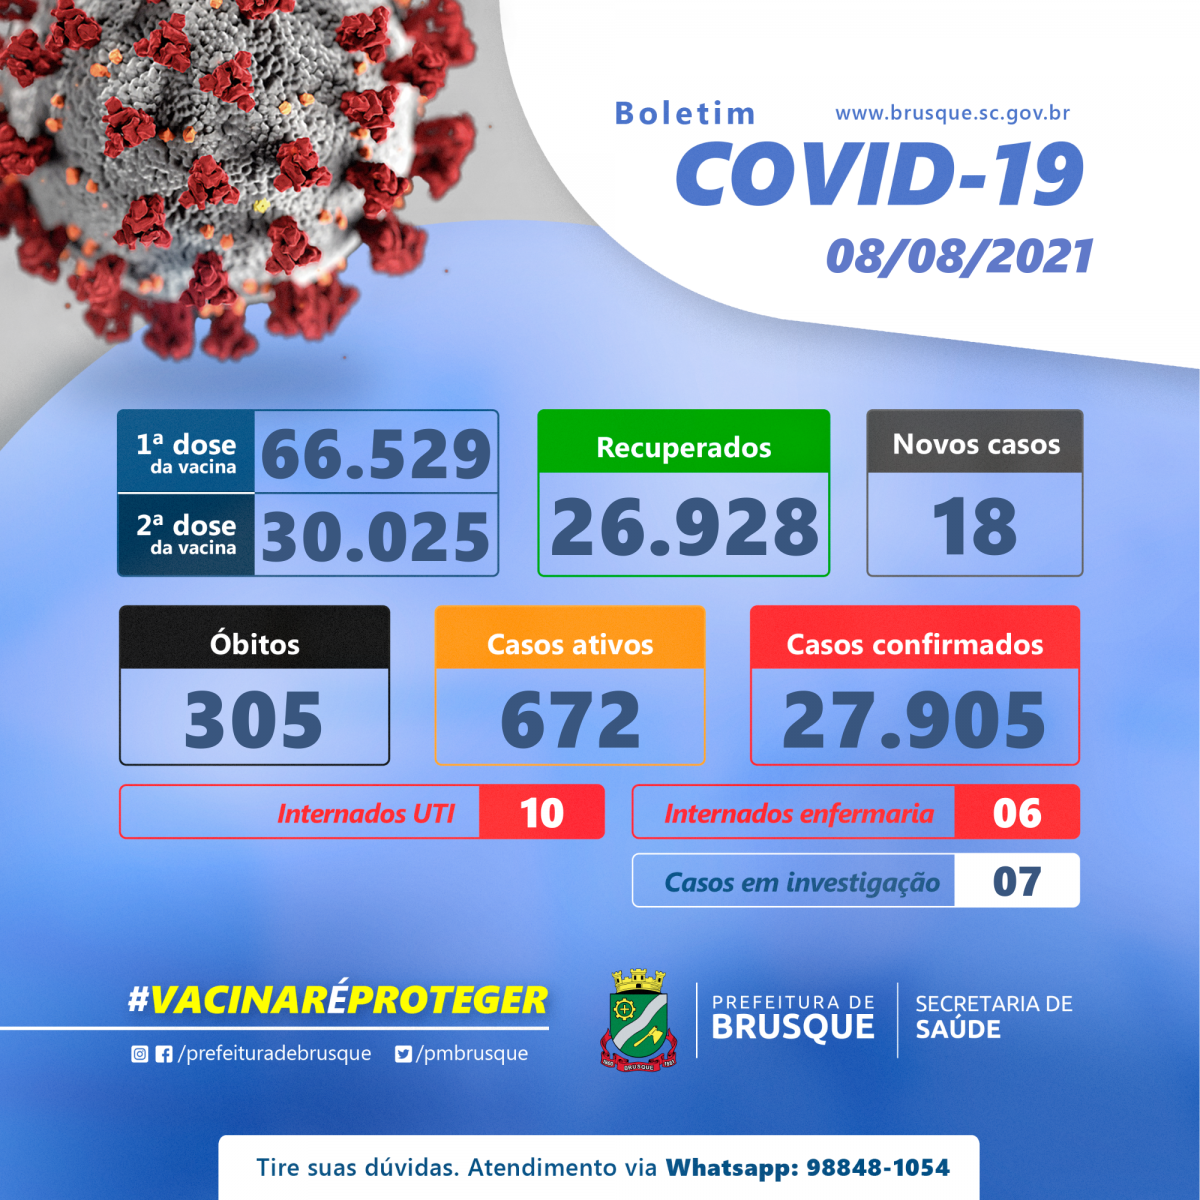 Covid-19: Confira o boletim epidemiológico deste domingo (08)